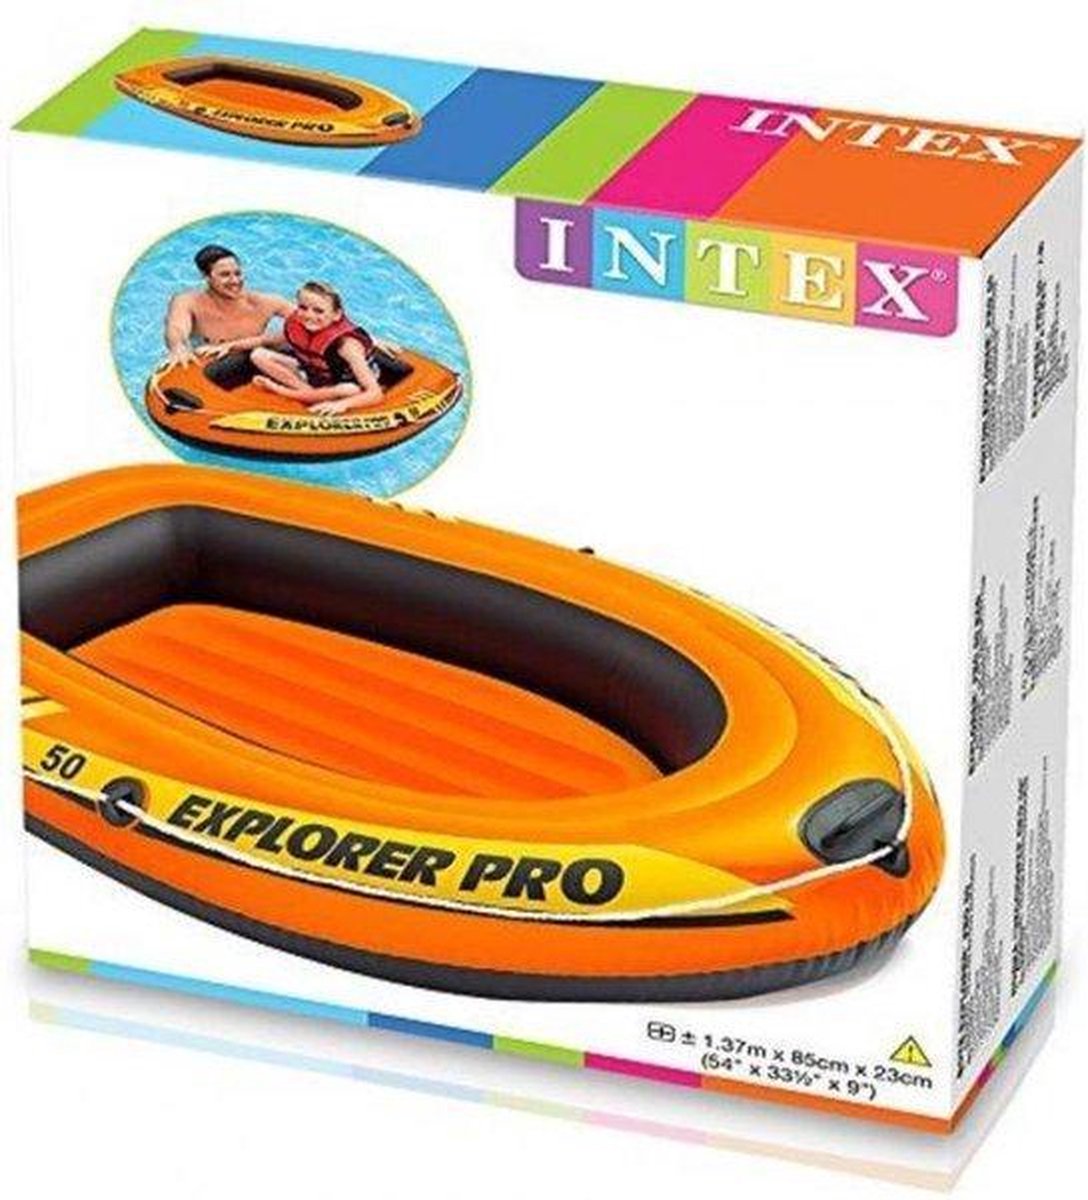 Intex Explorer Pro 200 - Opblaasboot